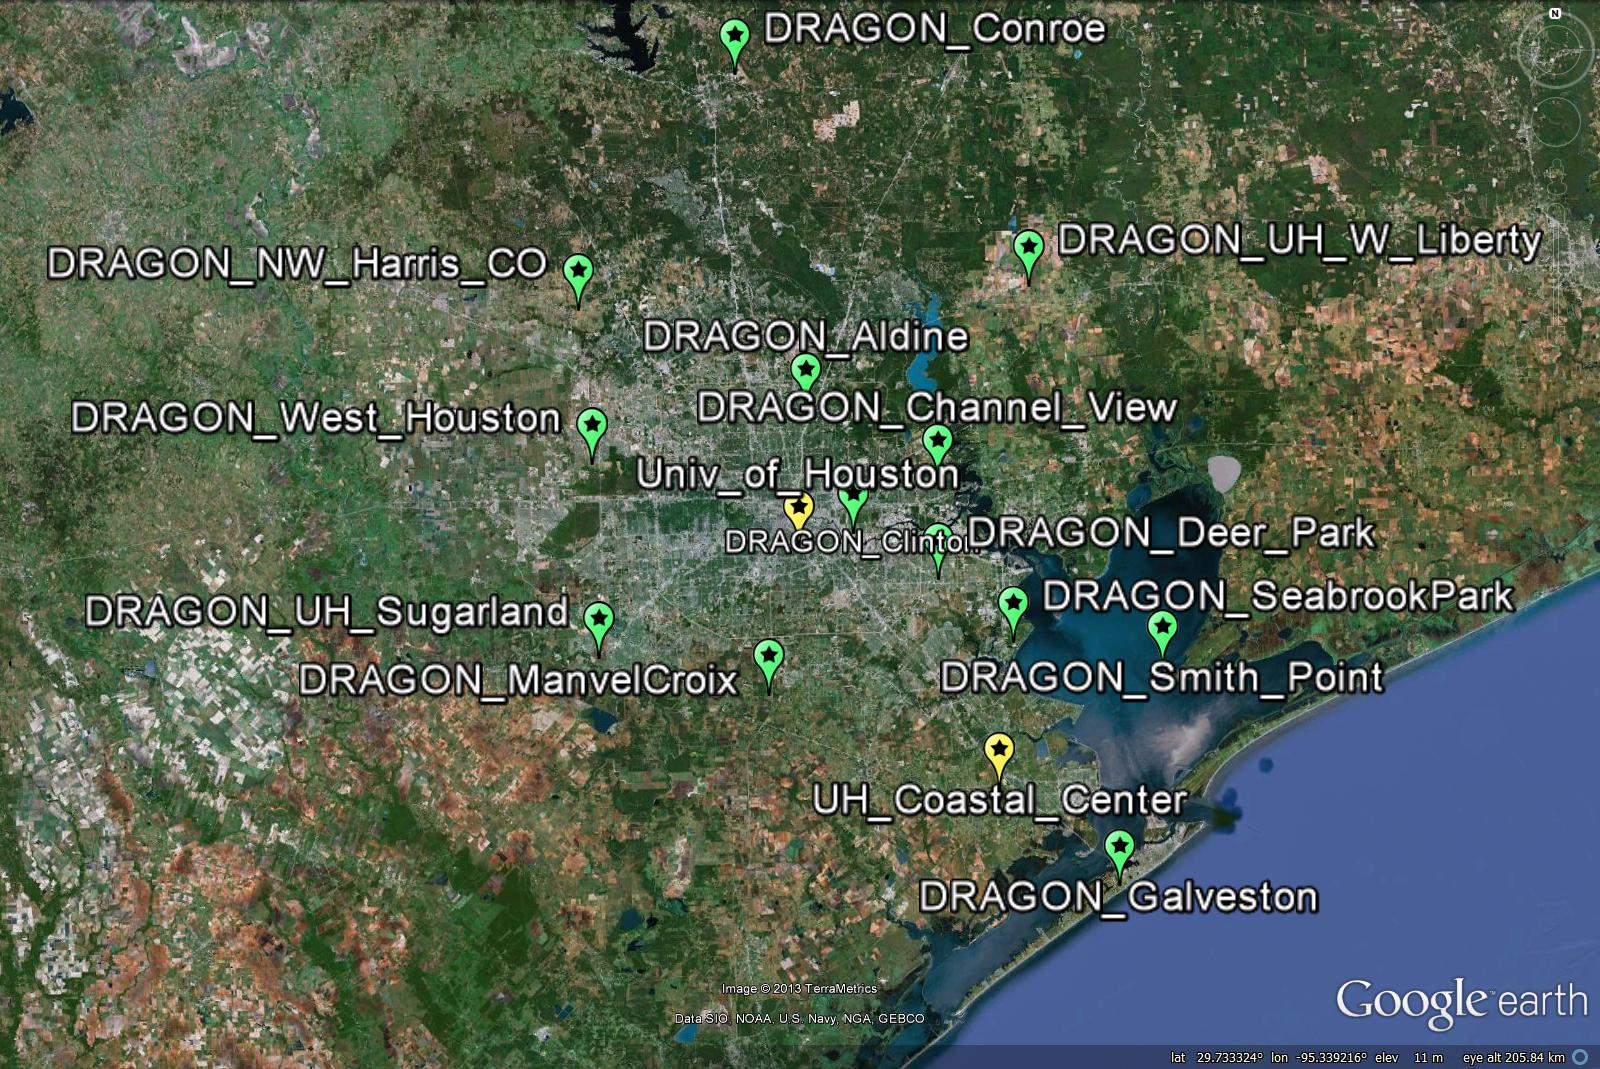 Figure 1 DRAGON-USA 2012 Site Distribution